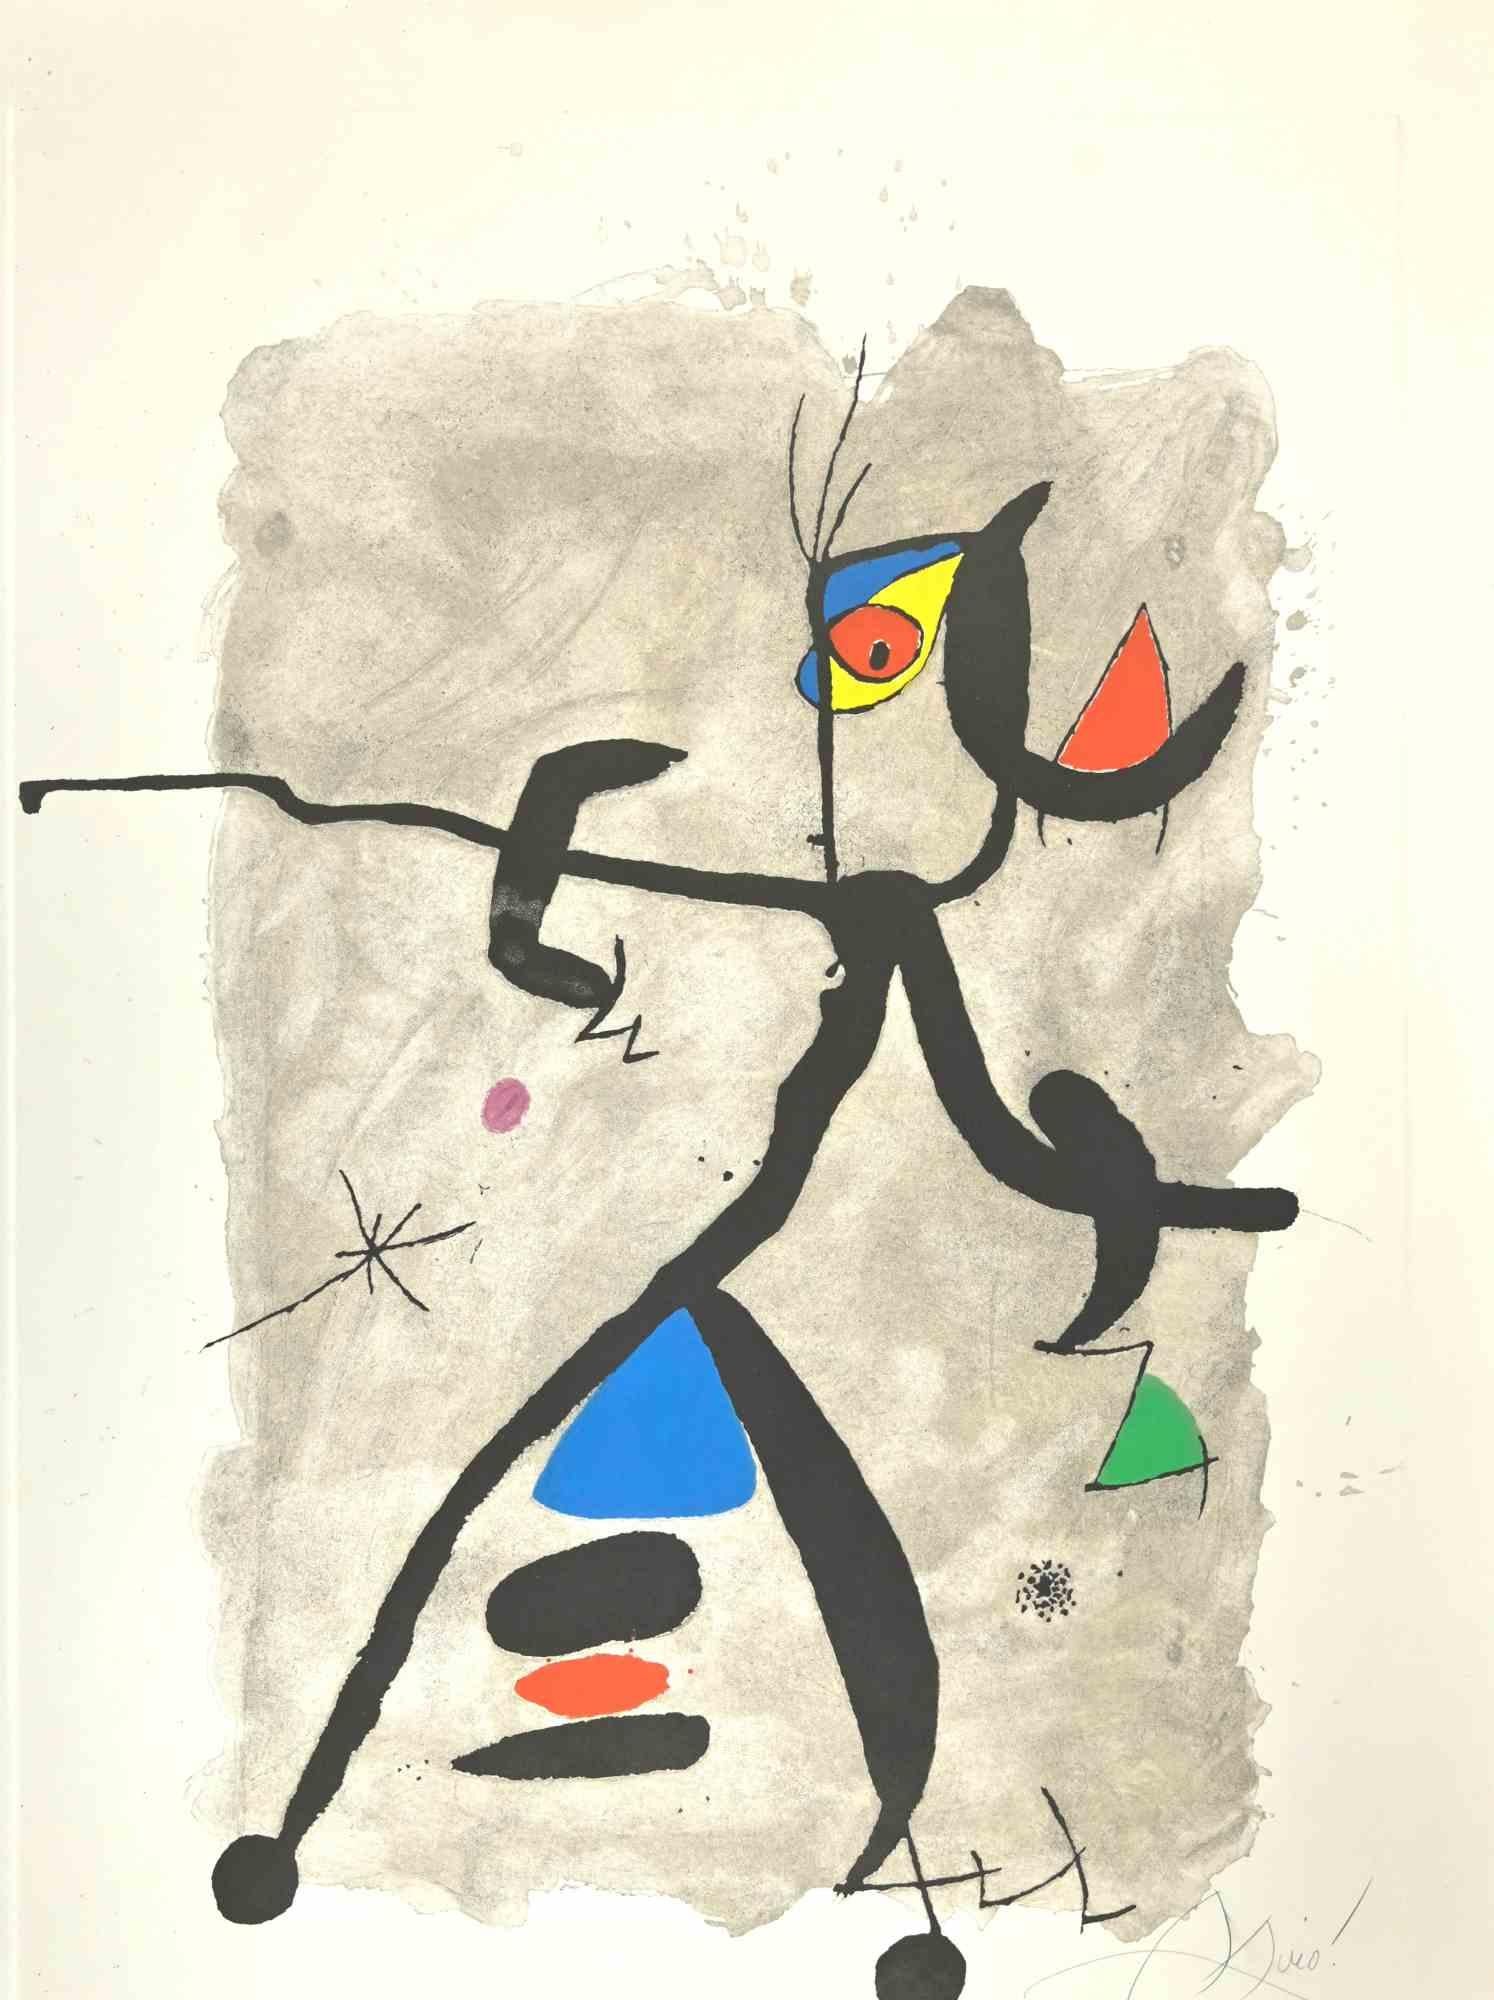 Abstract Print Joan Miró - Pour Alberti, pour l'Espagne ! - Gravure de Joan Mirò - 1975